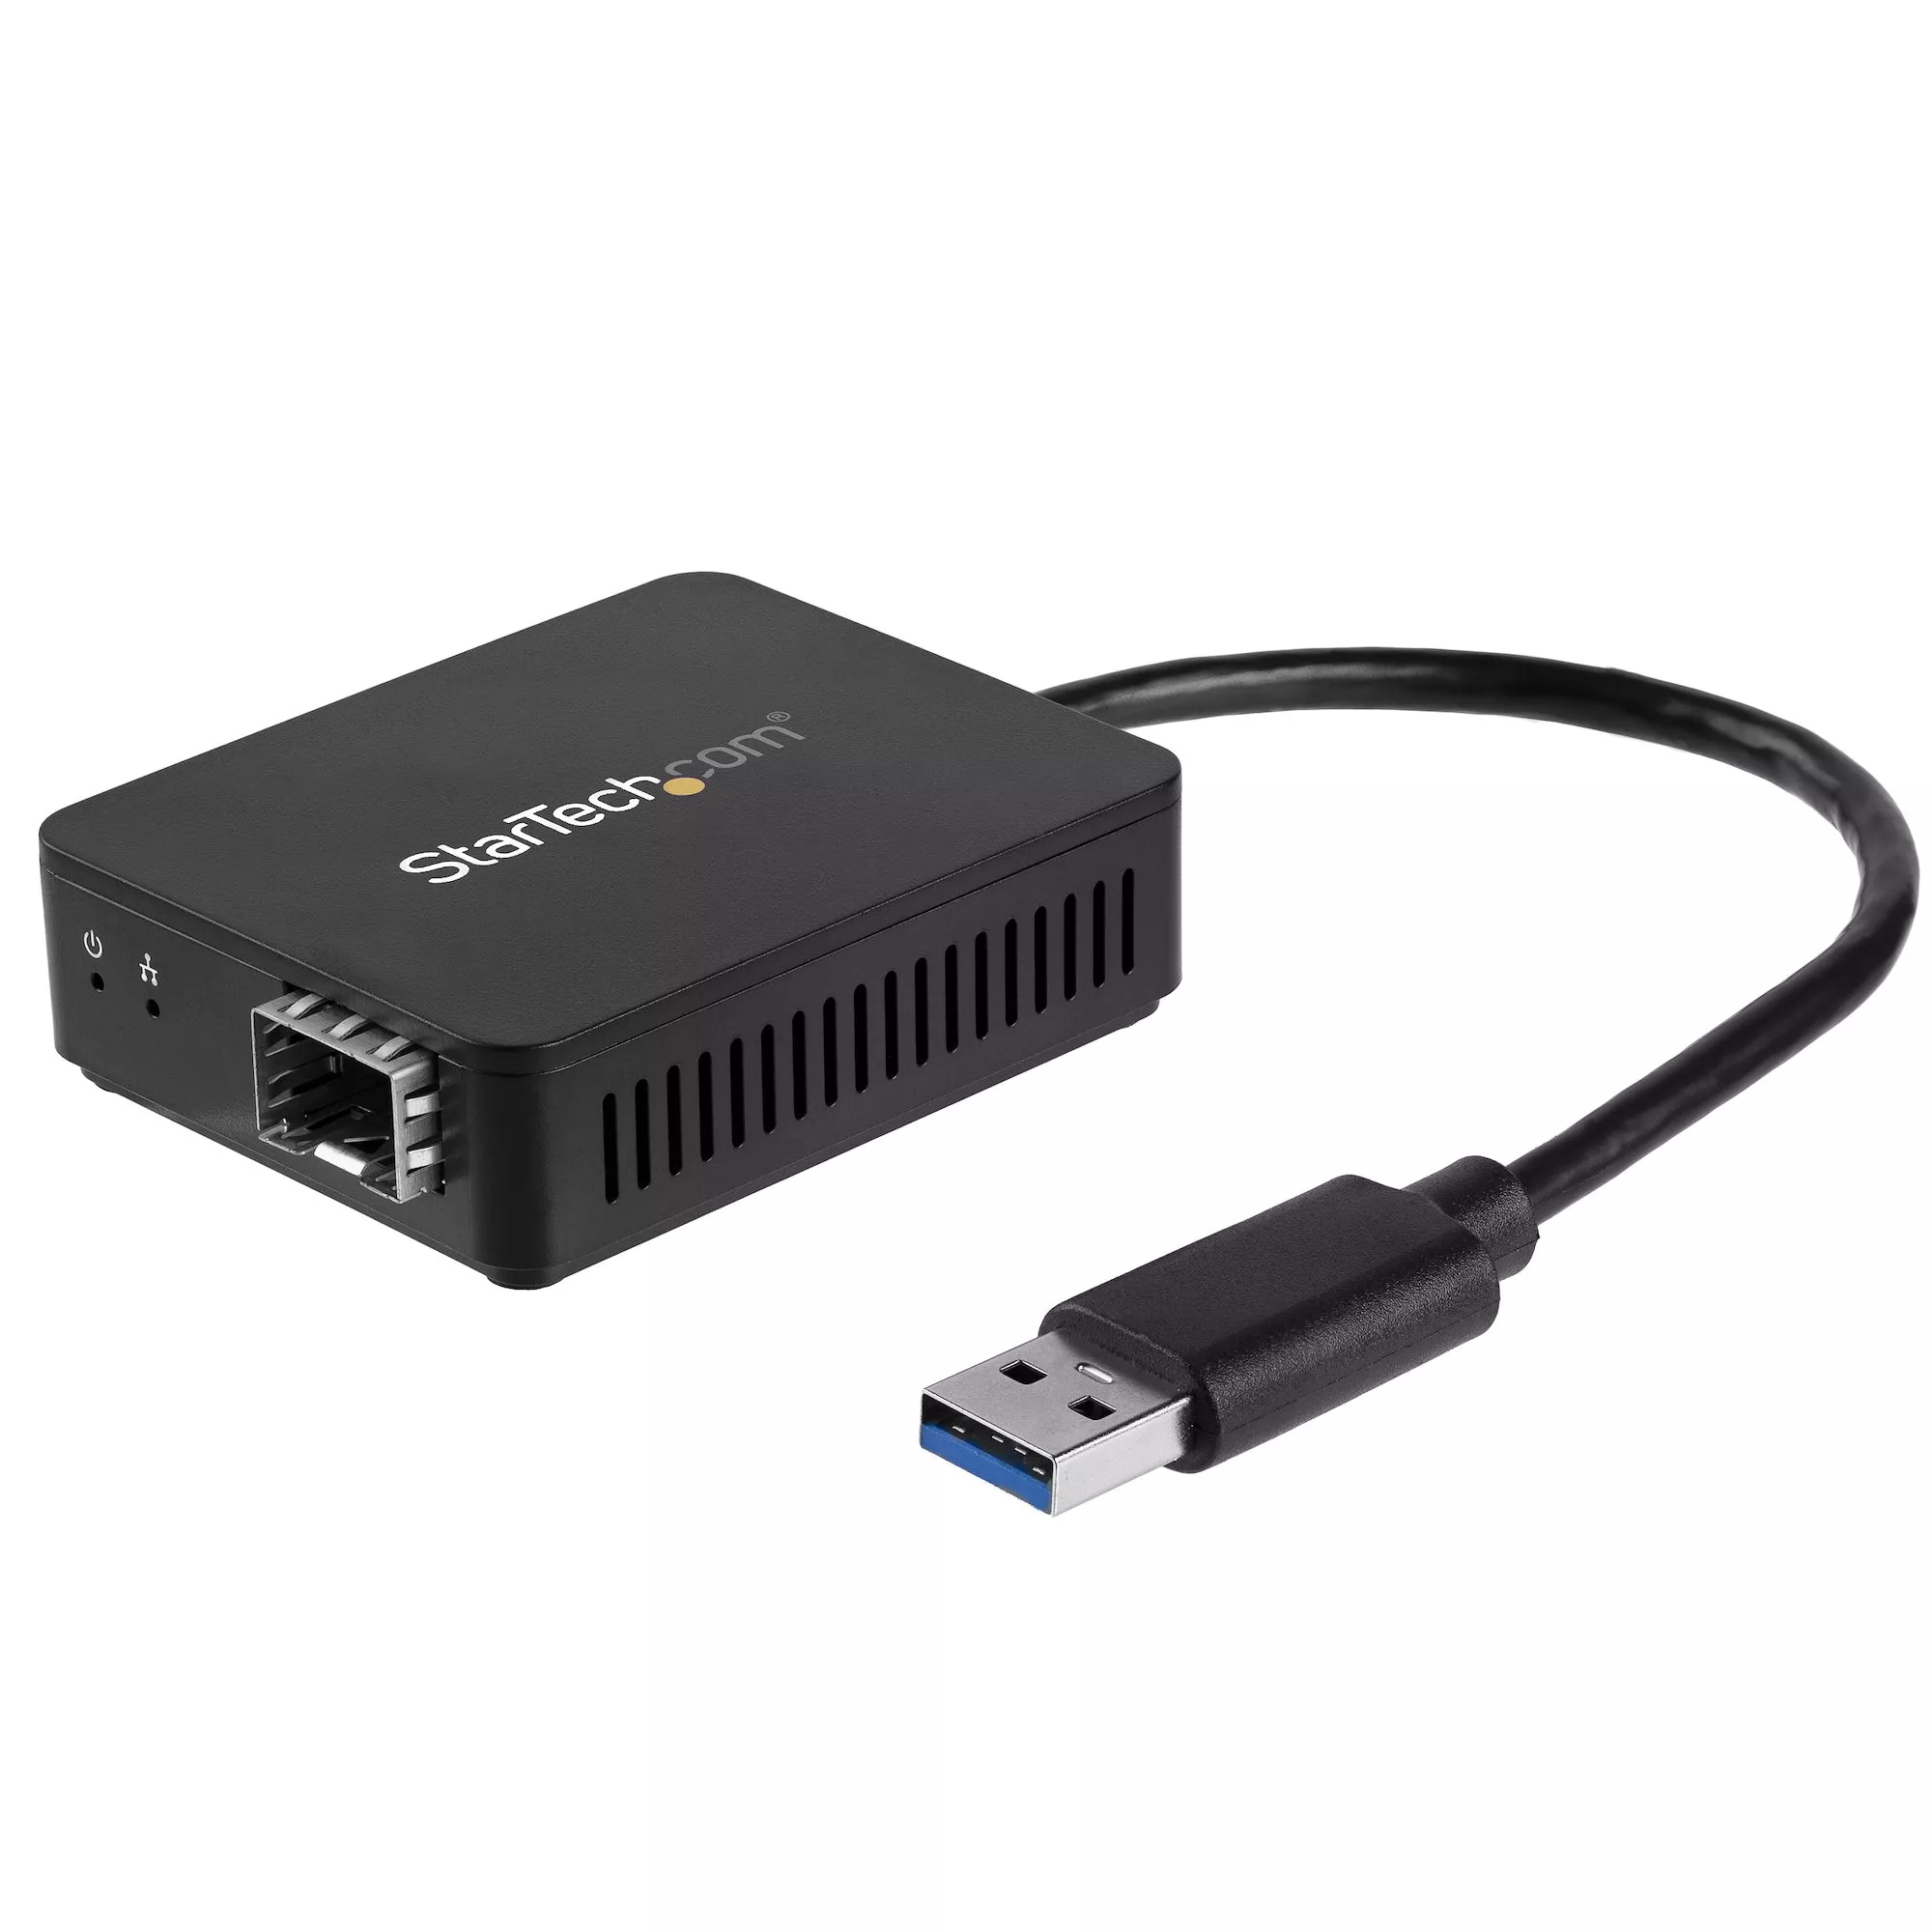 Achat StarTech.com Convertisseur USB 3.0 vers Fibre Optique au meilleur prix